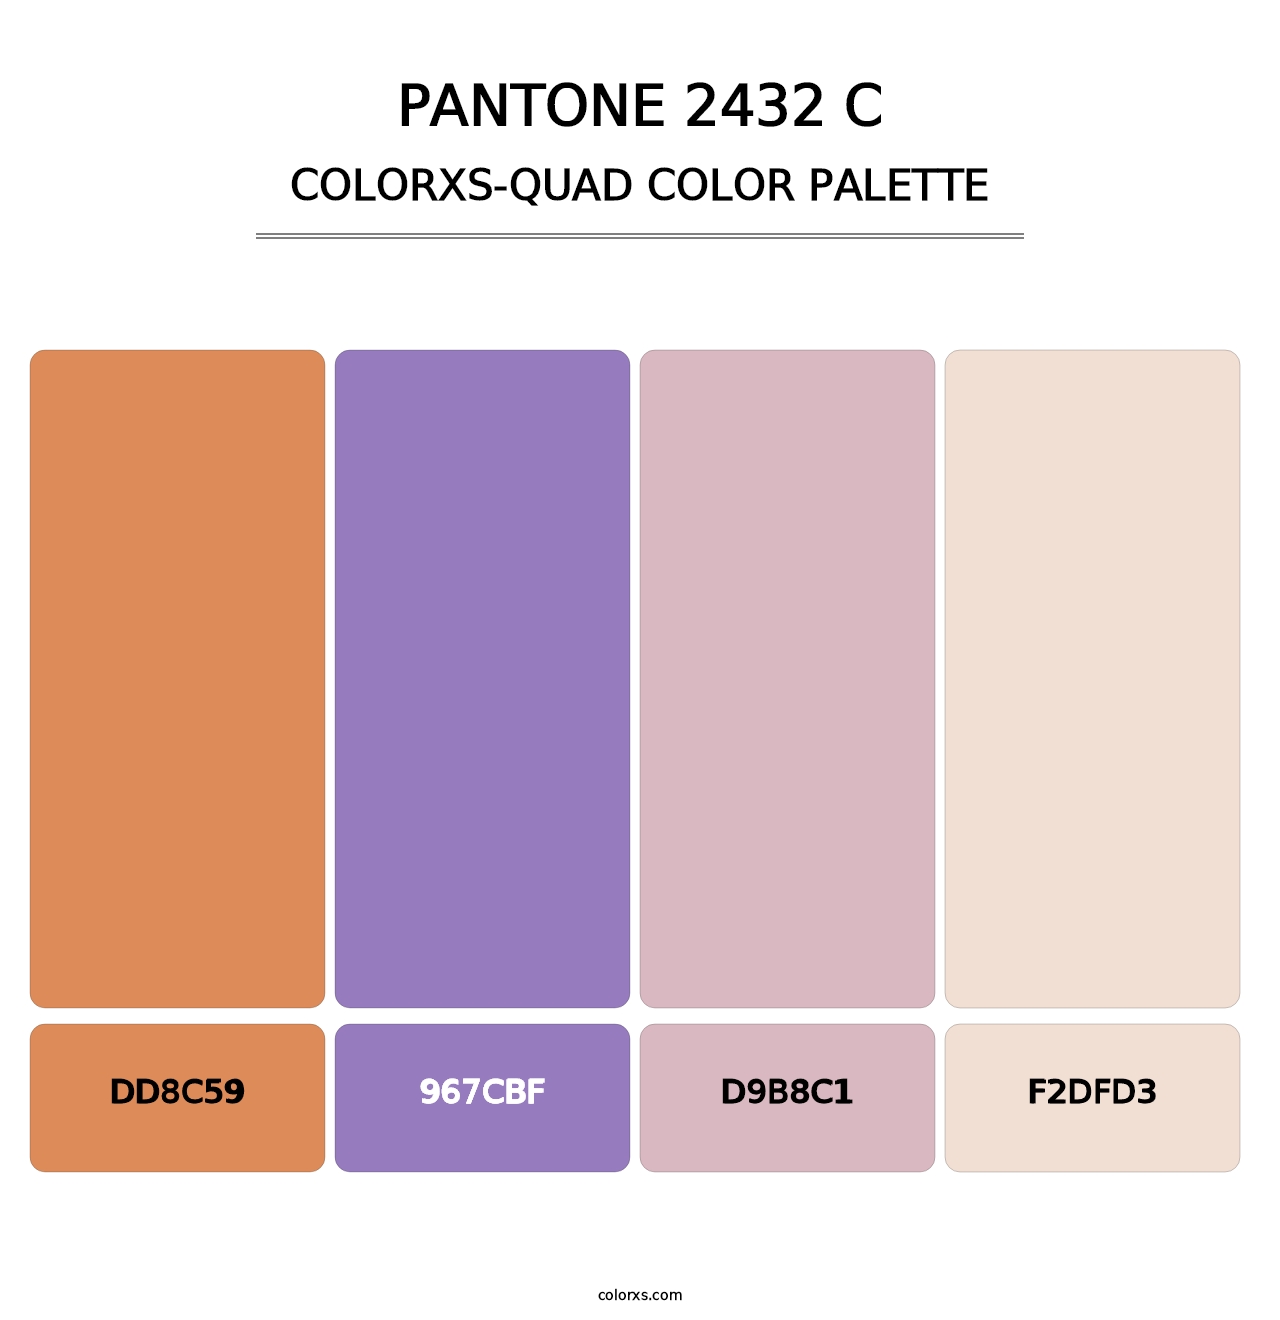 PANTONE 2432 C - Colorxs Quad Palette